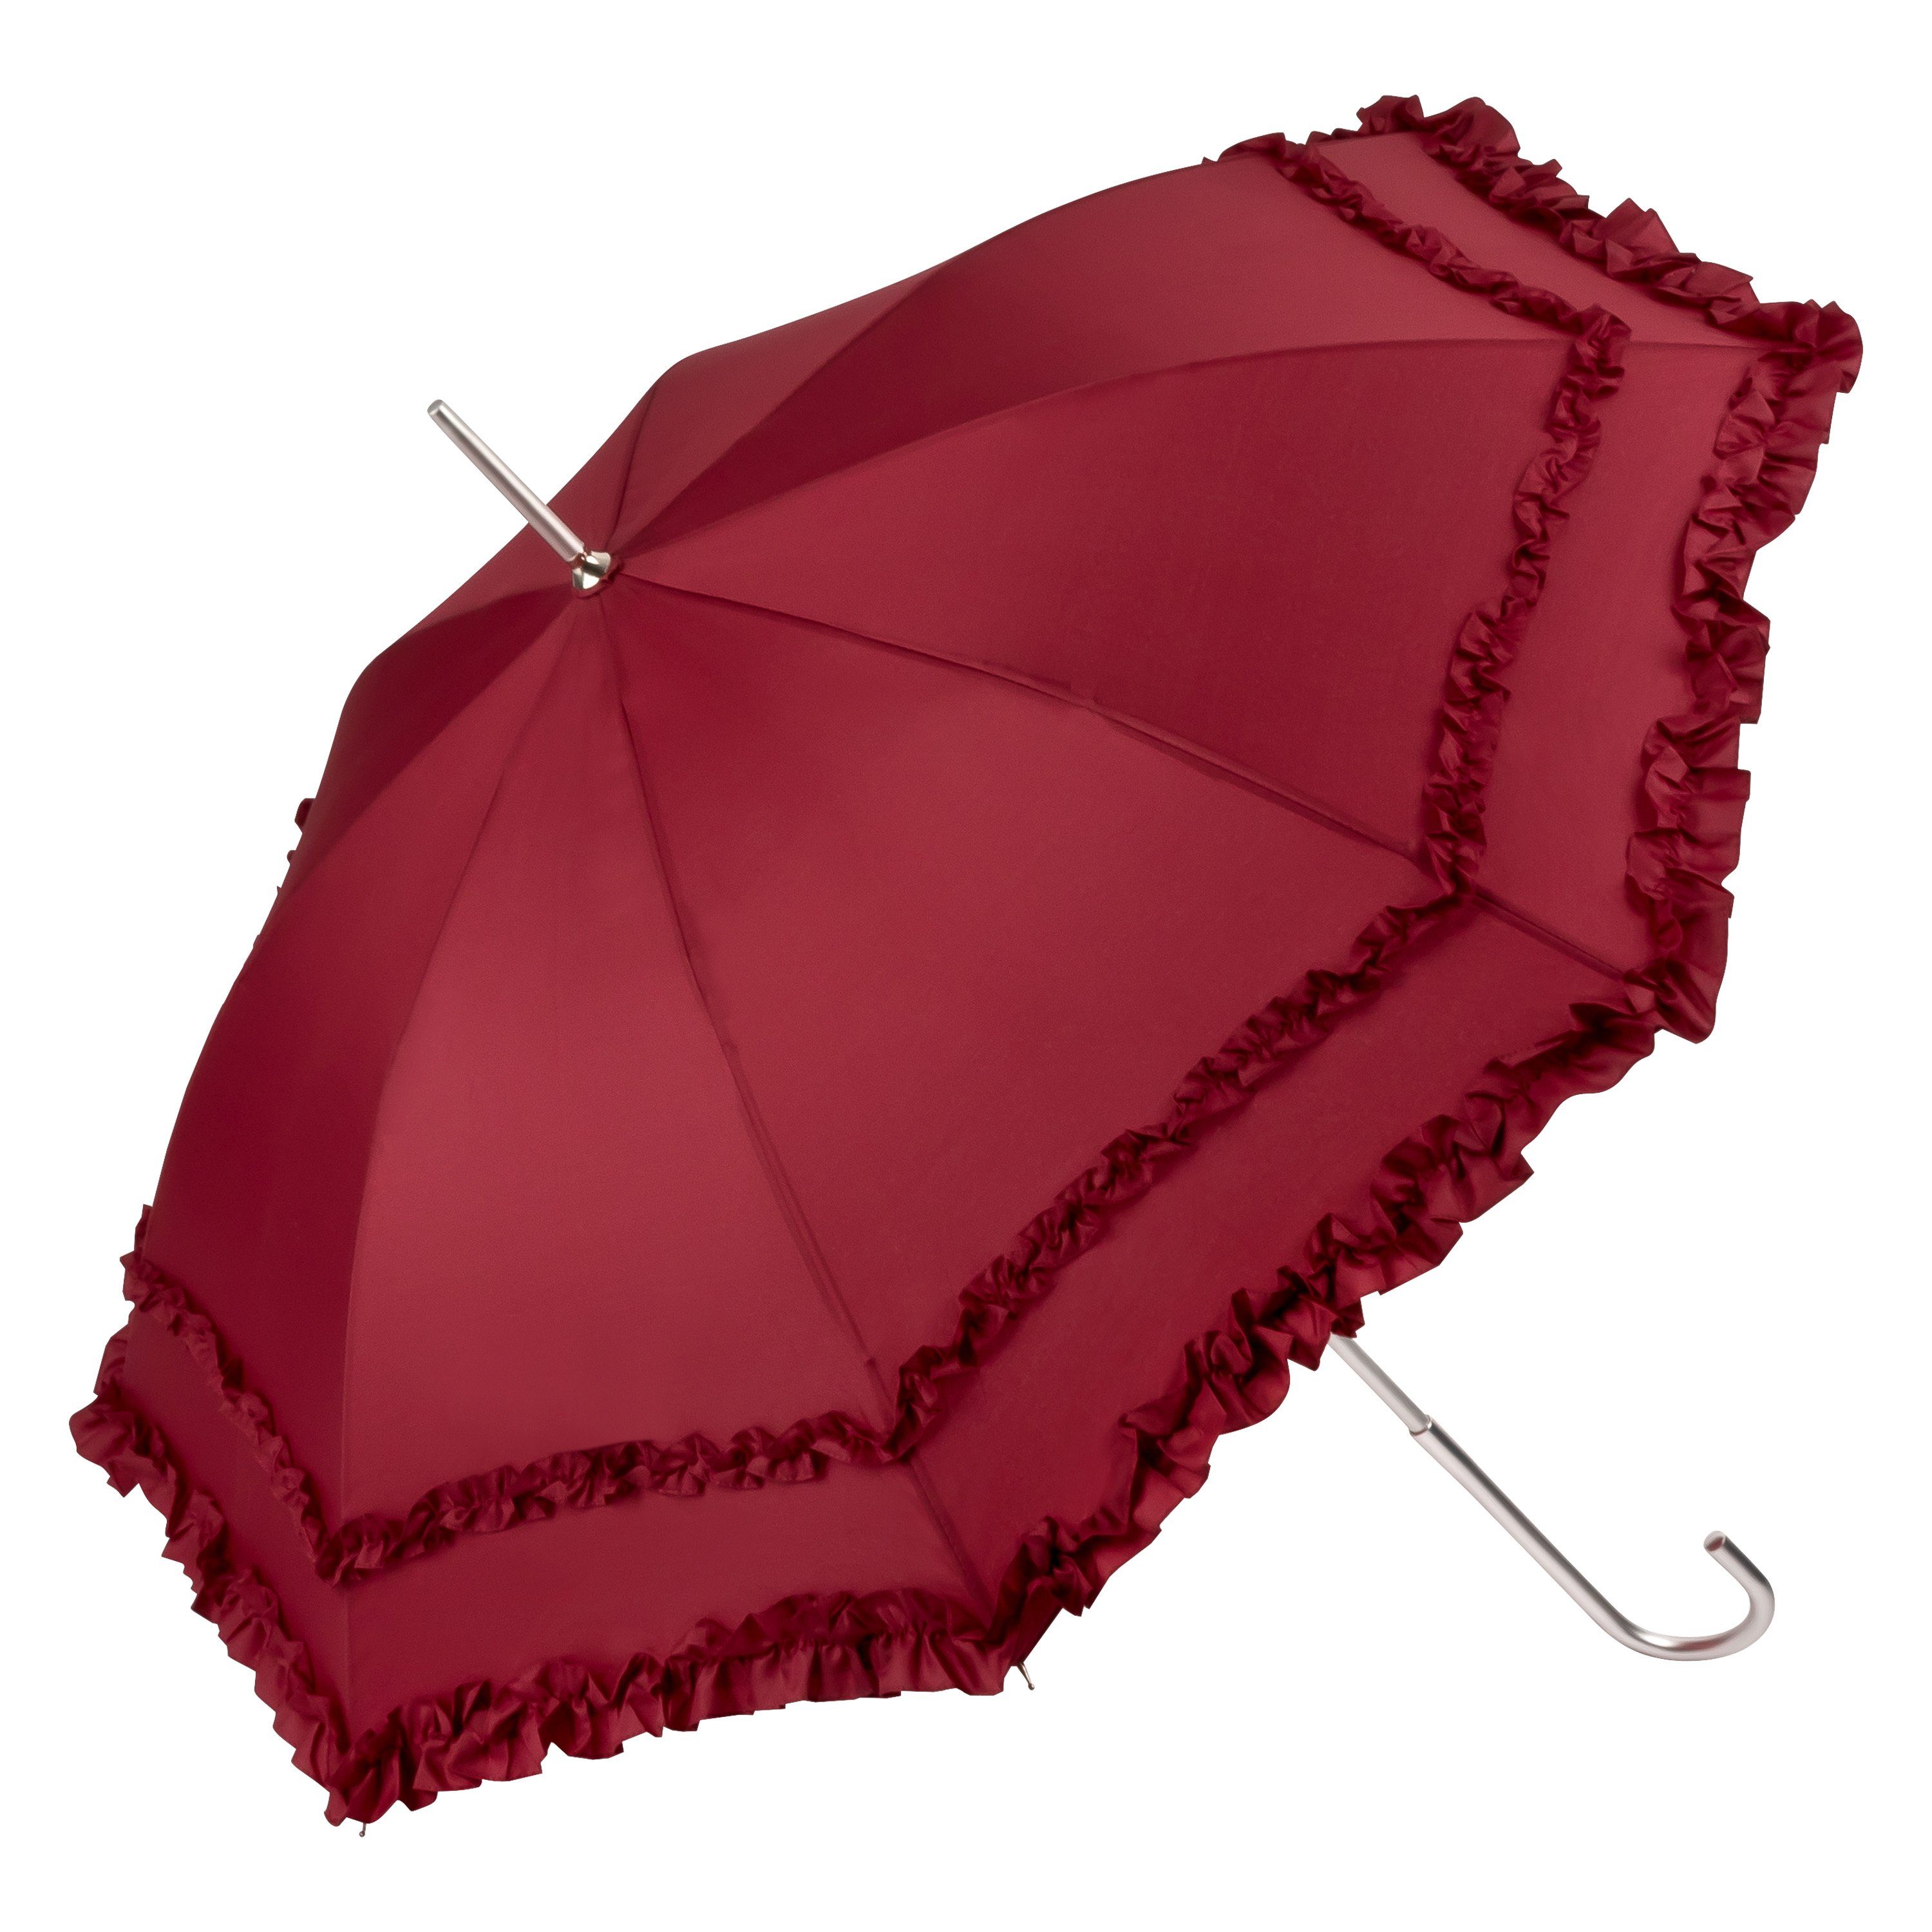 von Lilienfeld Stockregenschirm Regenschirm Sonnenschirm Hochzeitsschirm Mary, zwei Rüschenkanten bordeaux